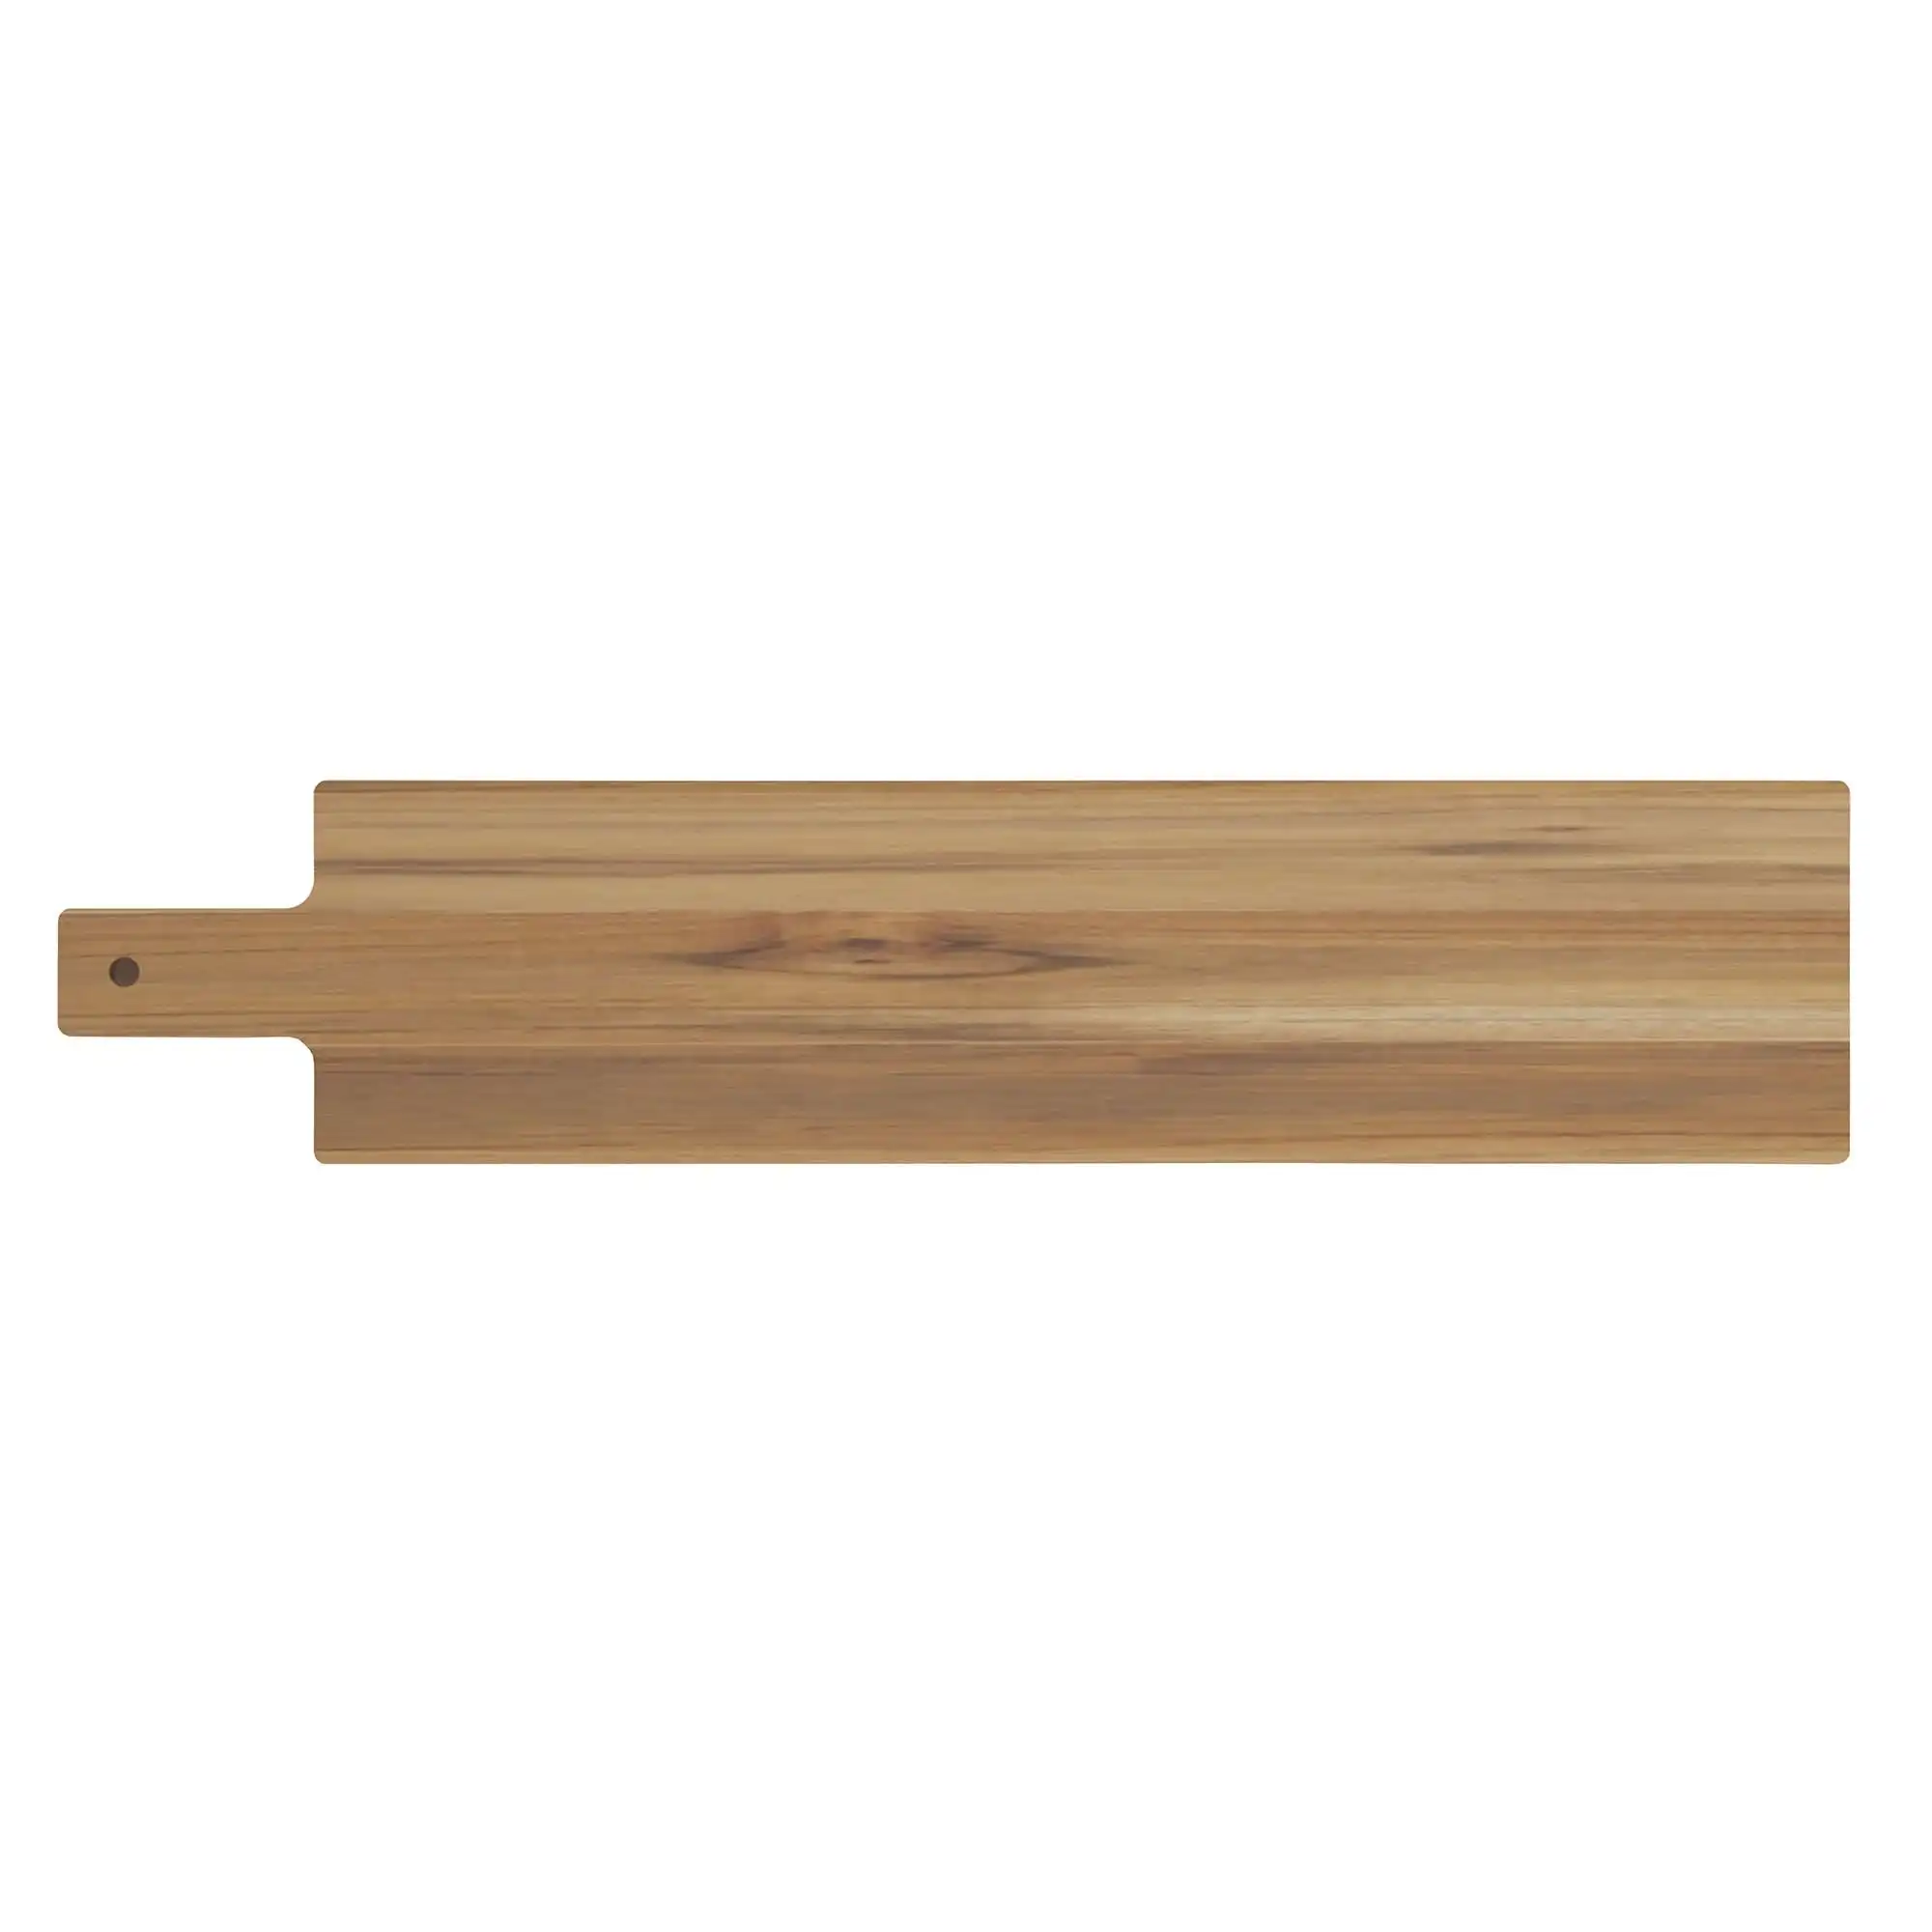 Tramontina Cutting Board Cutting Board With Handle, Teak Wood 700x150mm